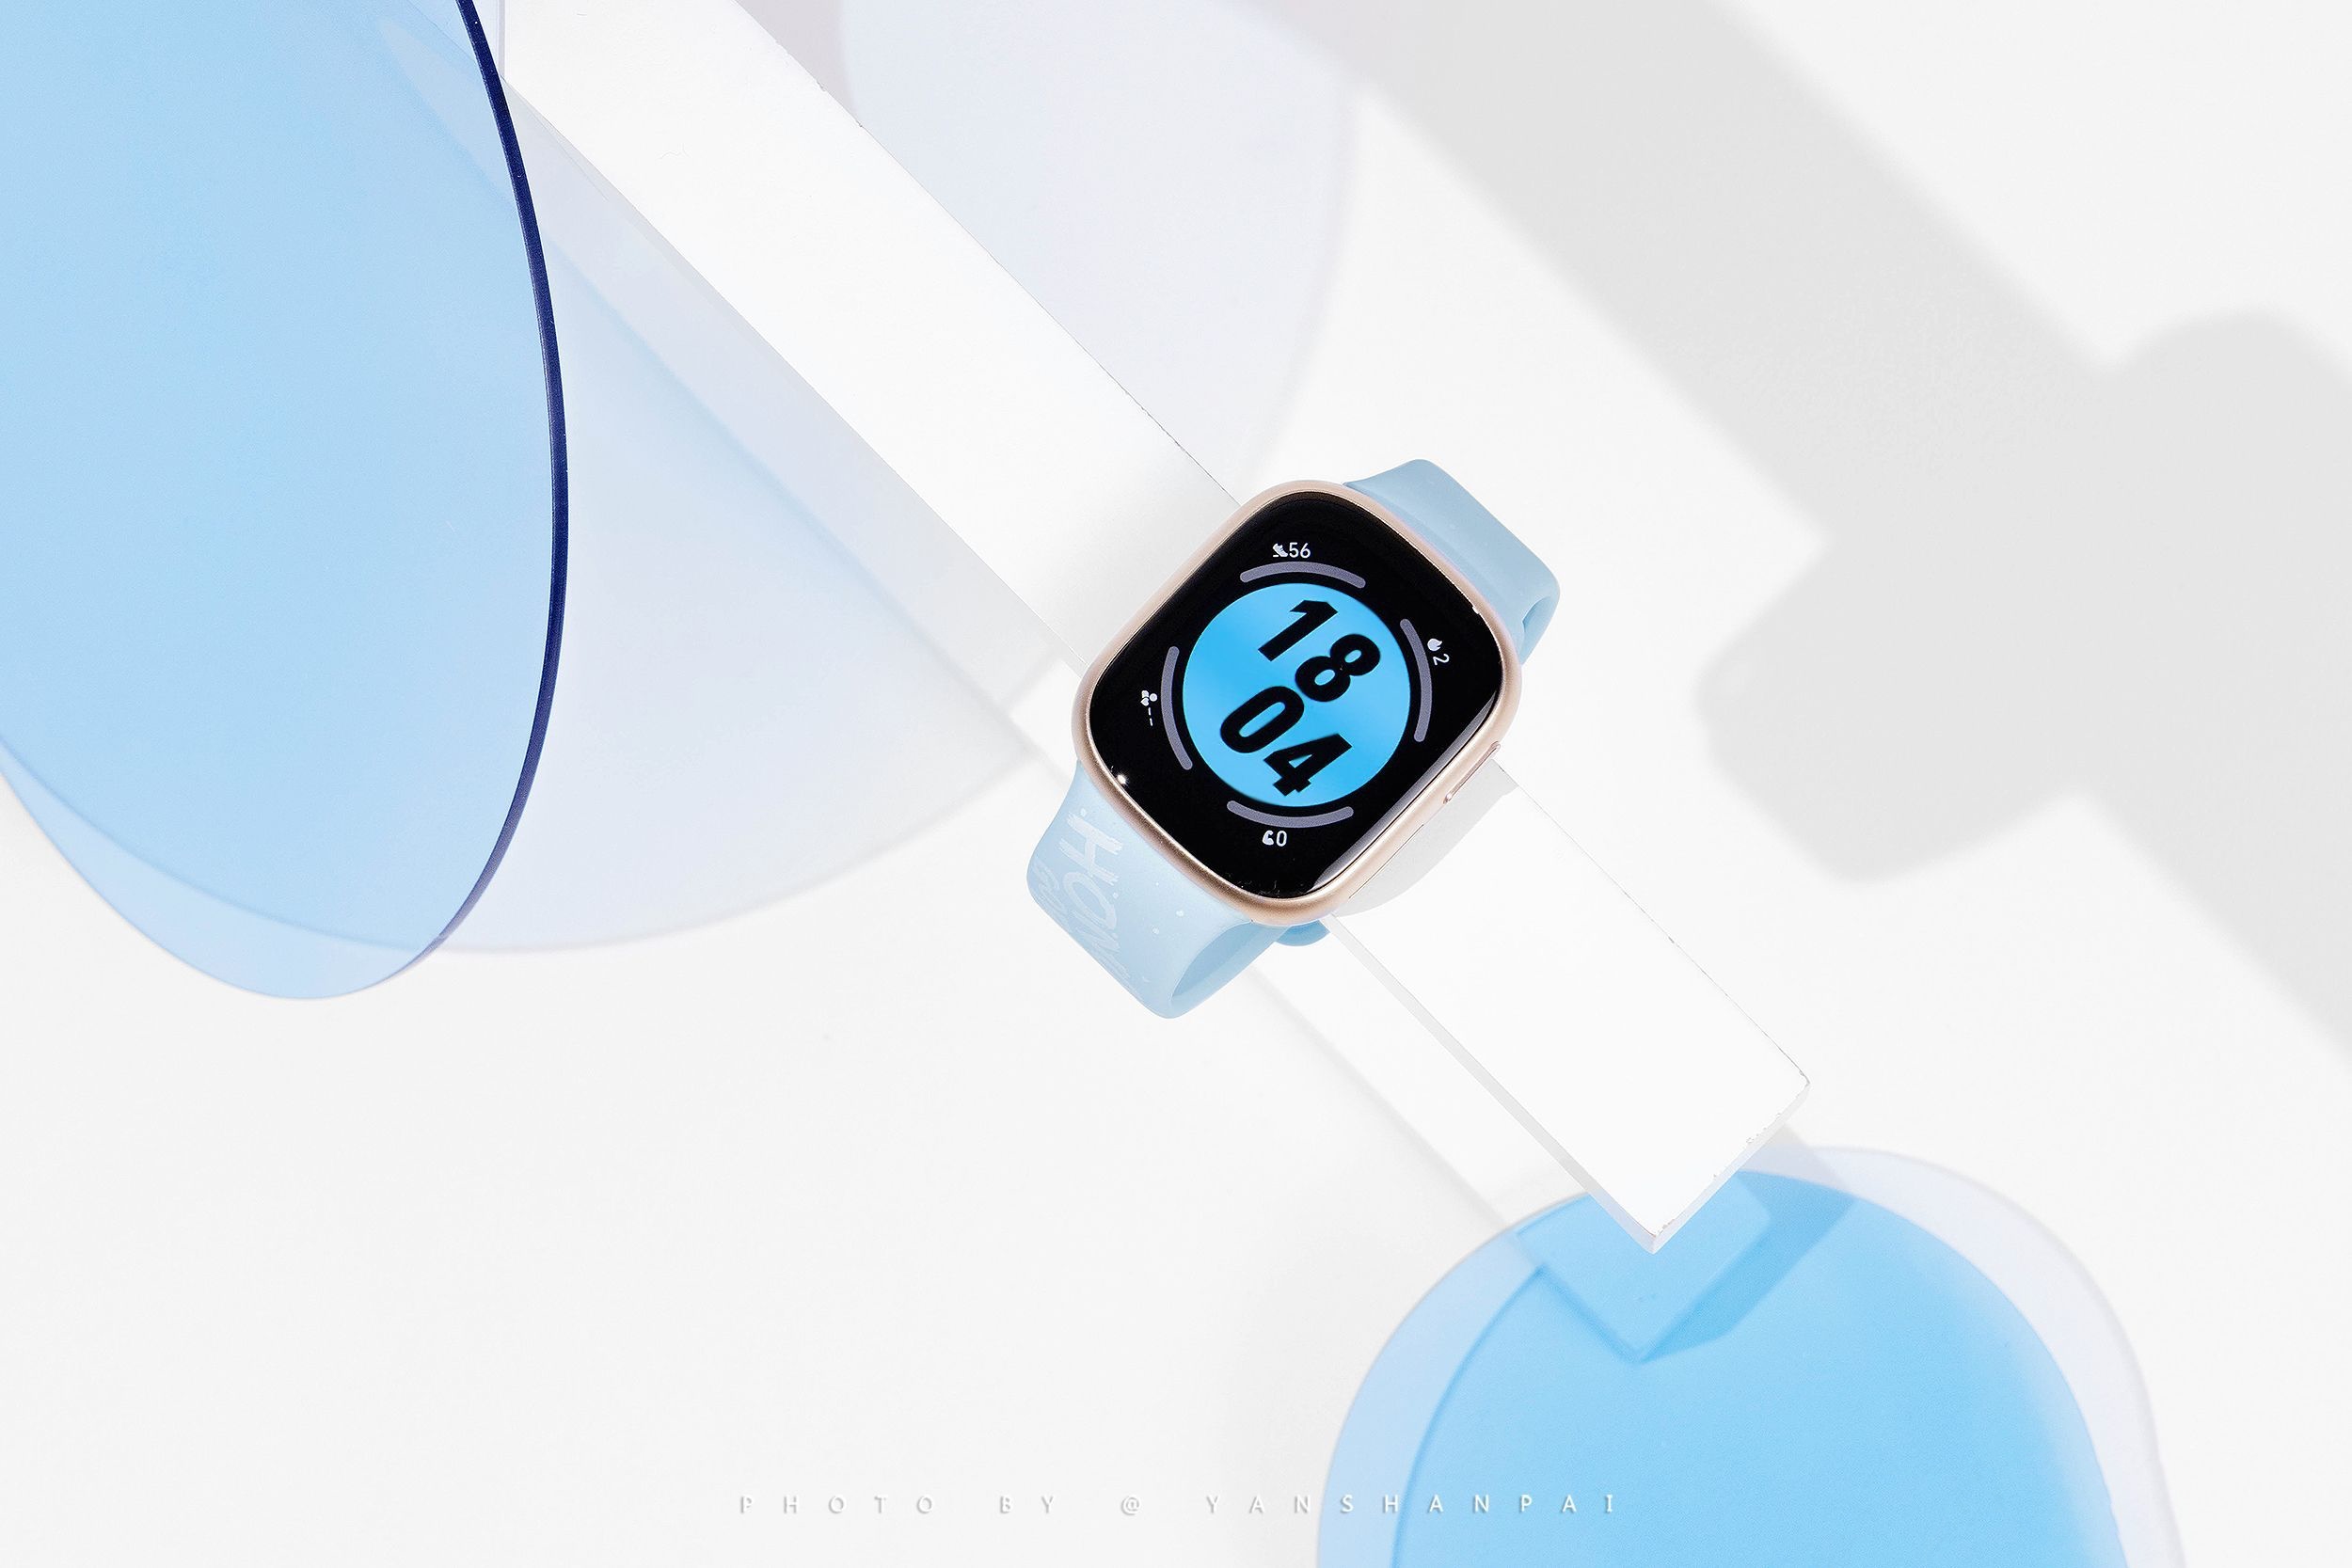 En kopi av Apple Watch: Live-bilder av Honor Watch 4 har dukket opp på nettet.